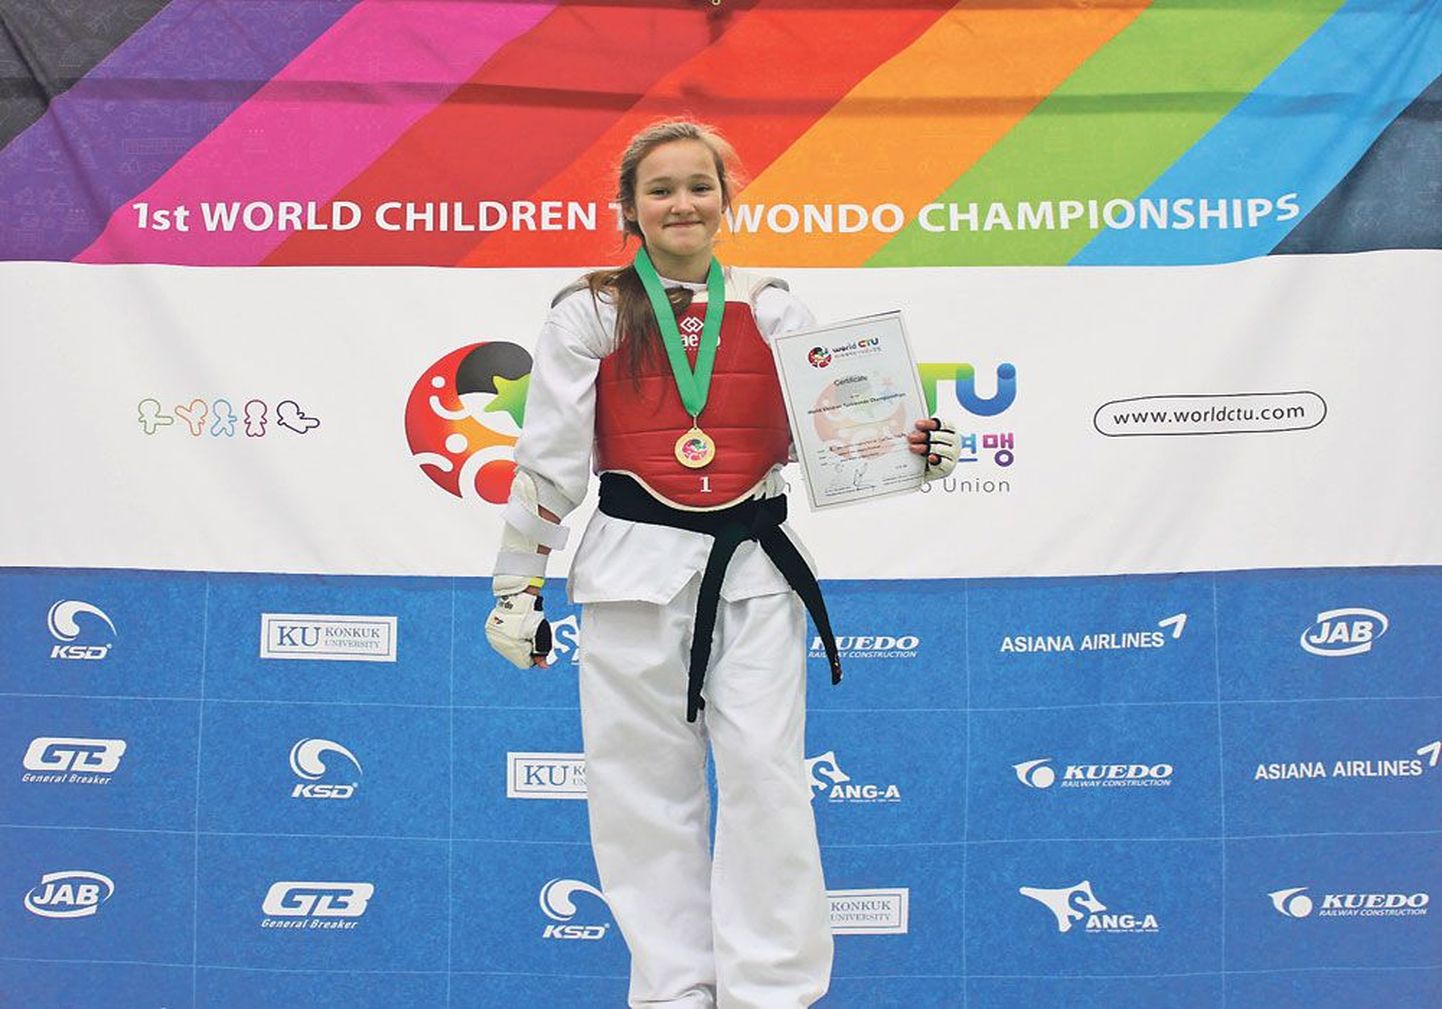 Боевой настрой и хорошая подготовка принесли 11-летней Полине Перцевой победу в чемпионате мира по таэквондо среди юниоров в Германии.